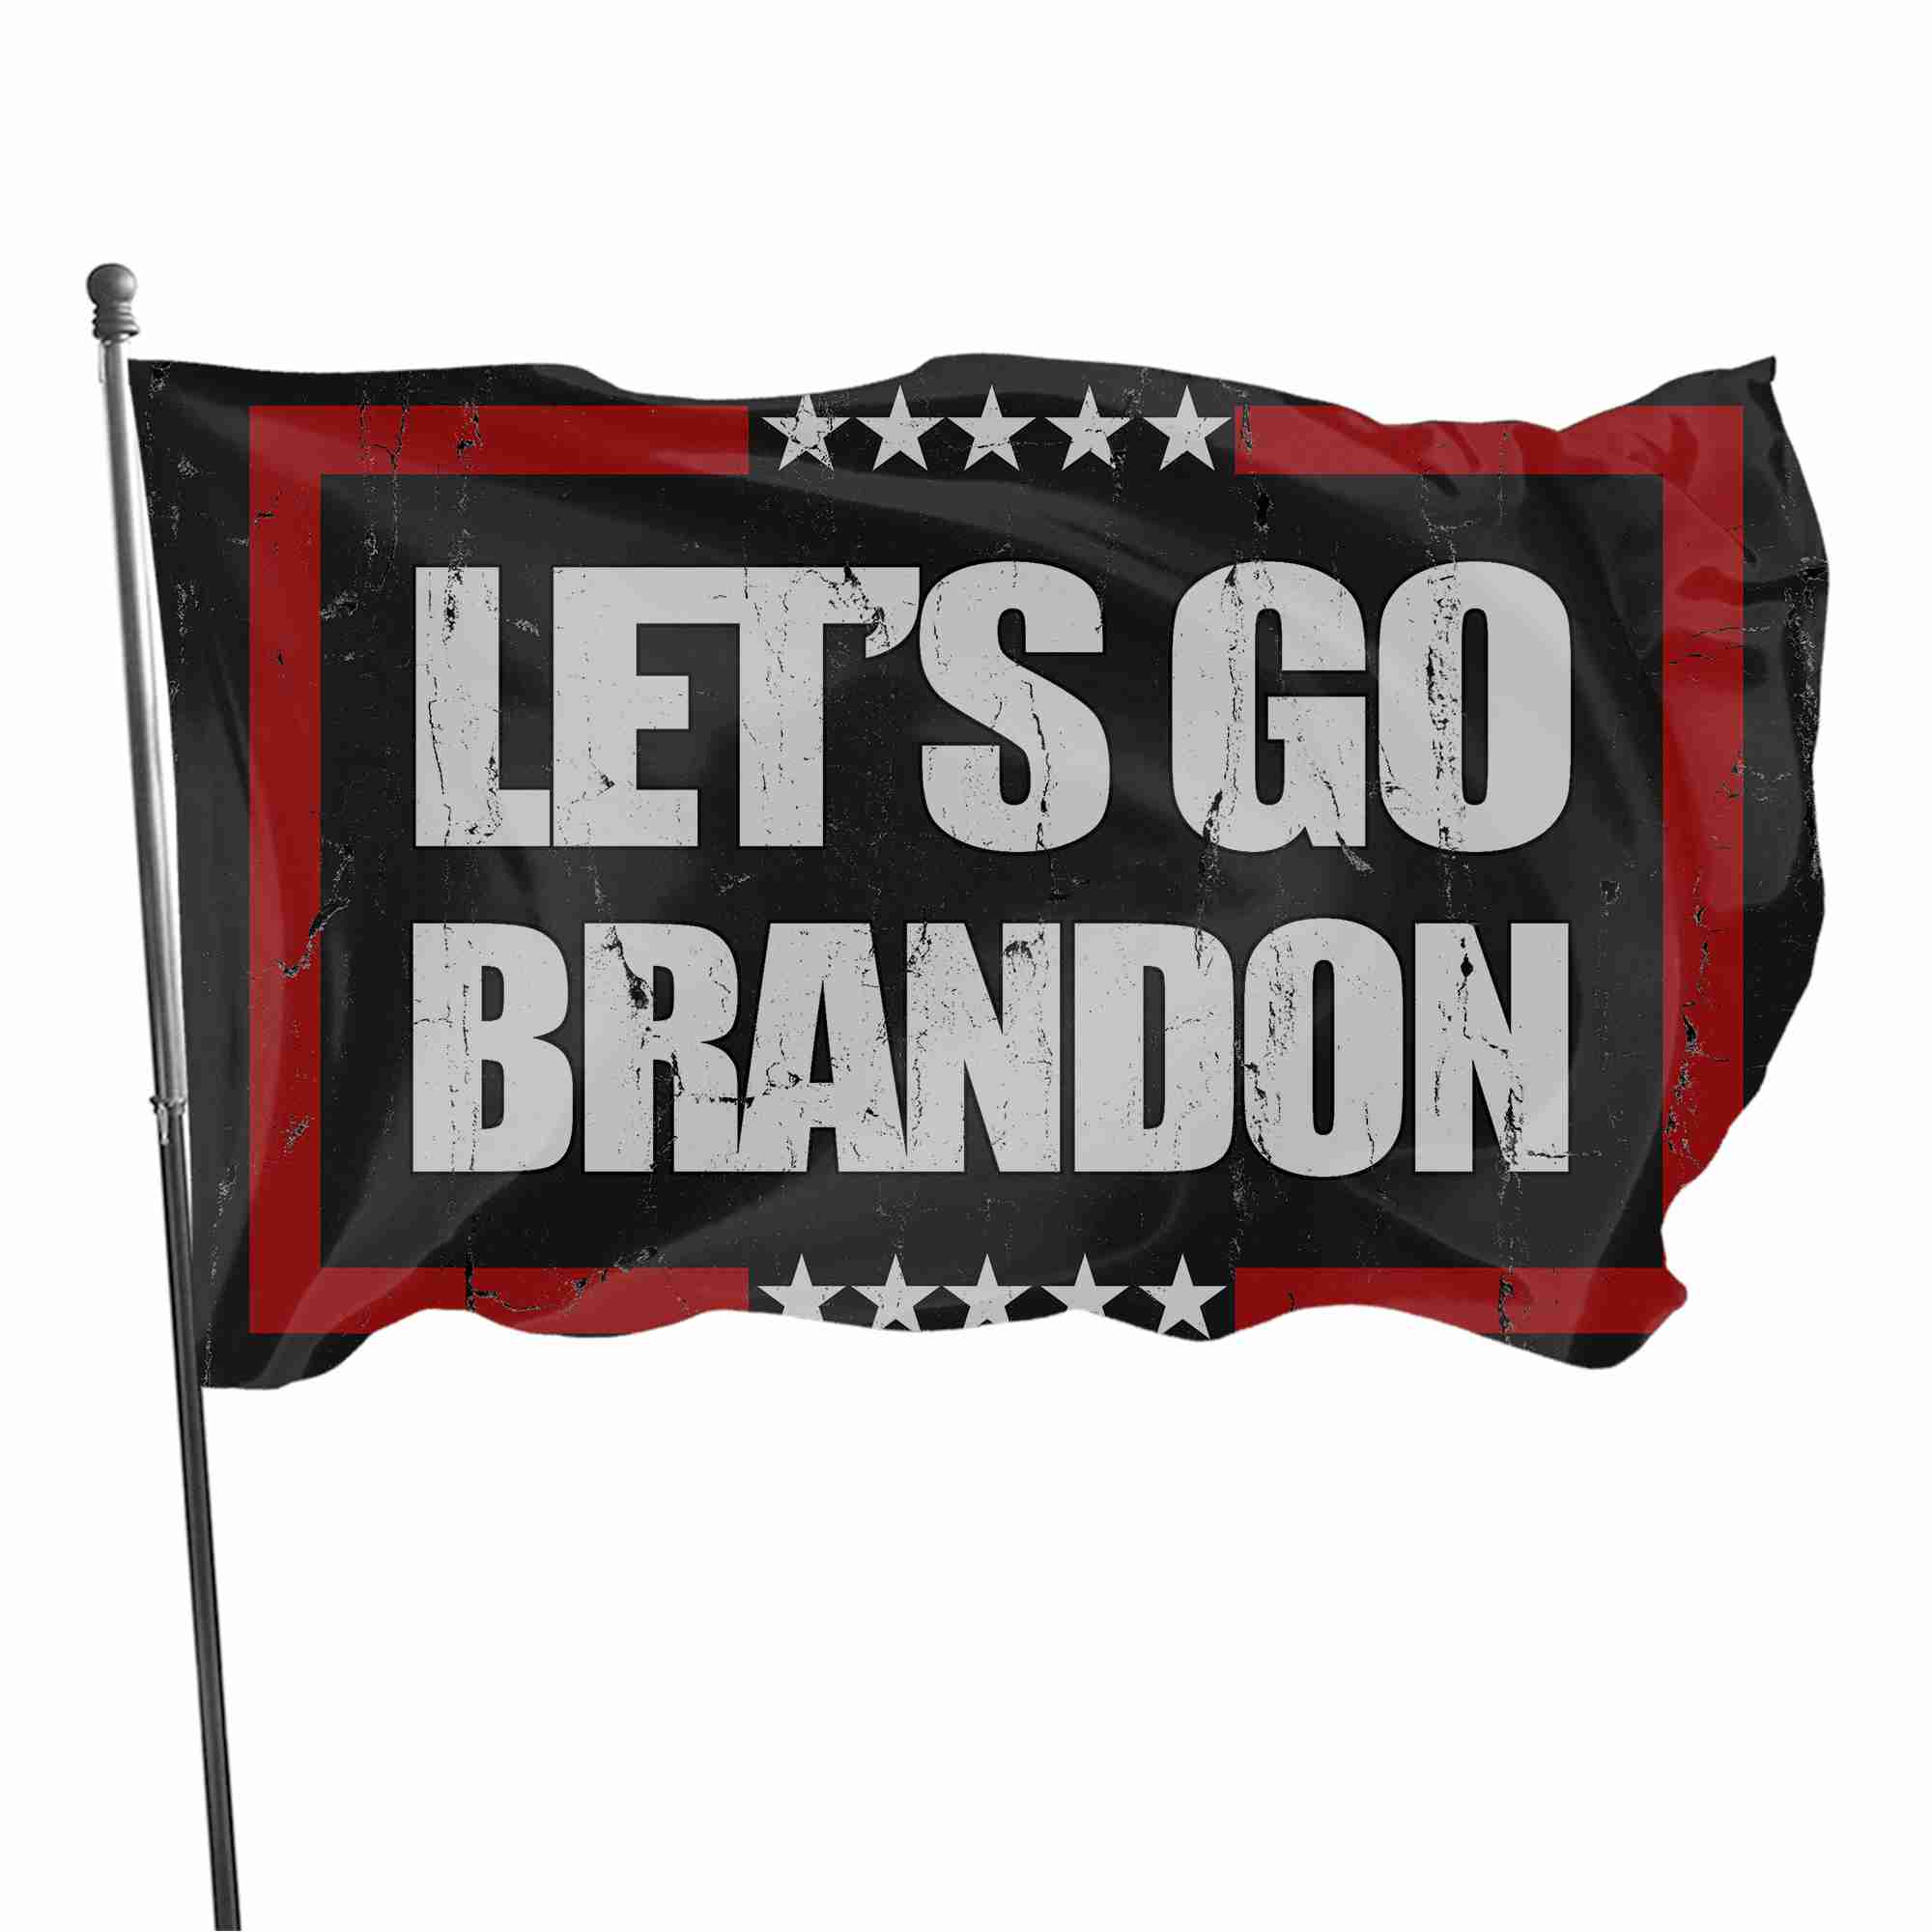 lets-go-brandon-flag for cheap